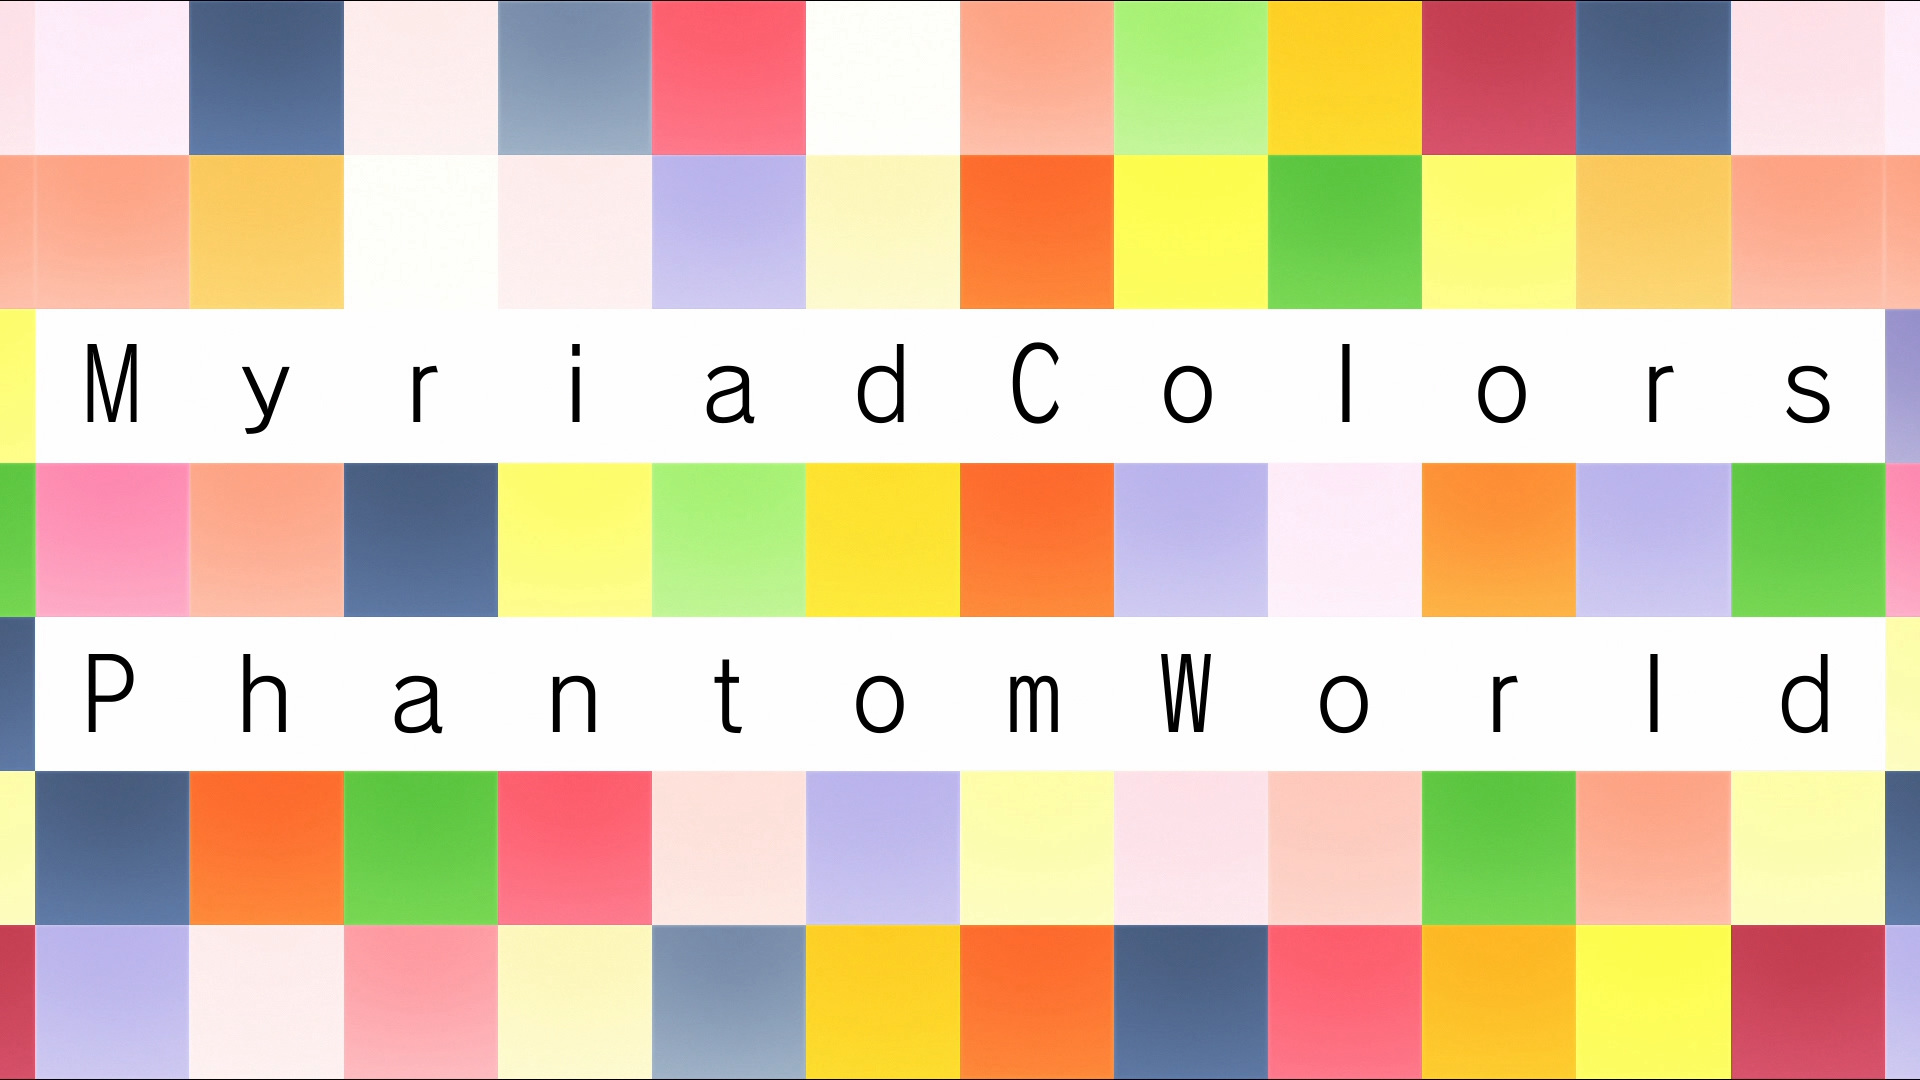 Myriad Colors Phantom World - Official Clip - Limbo! 